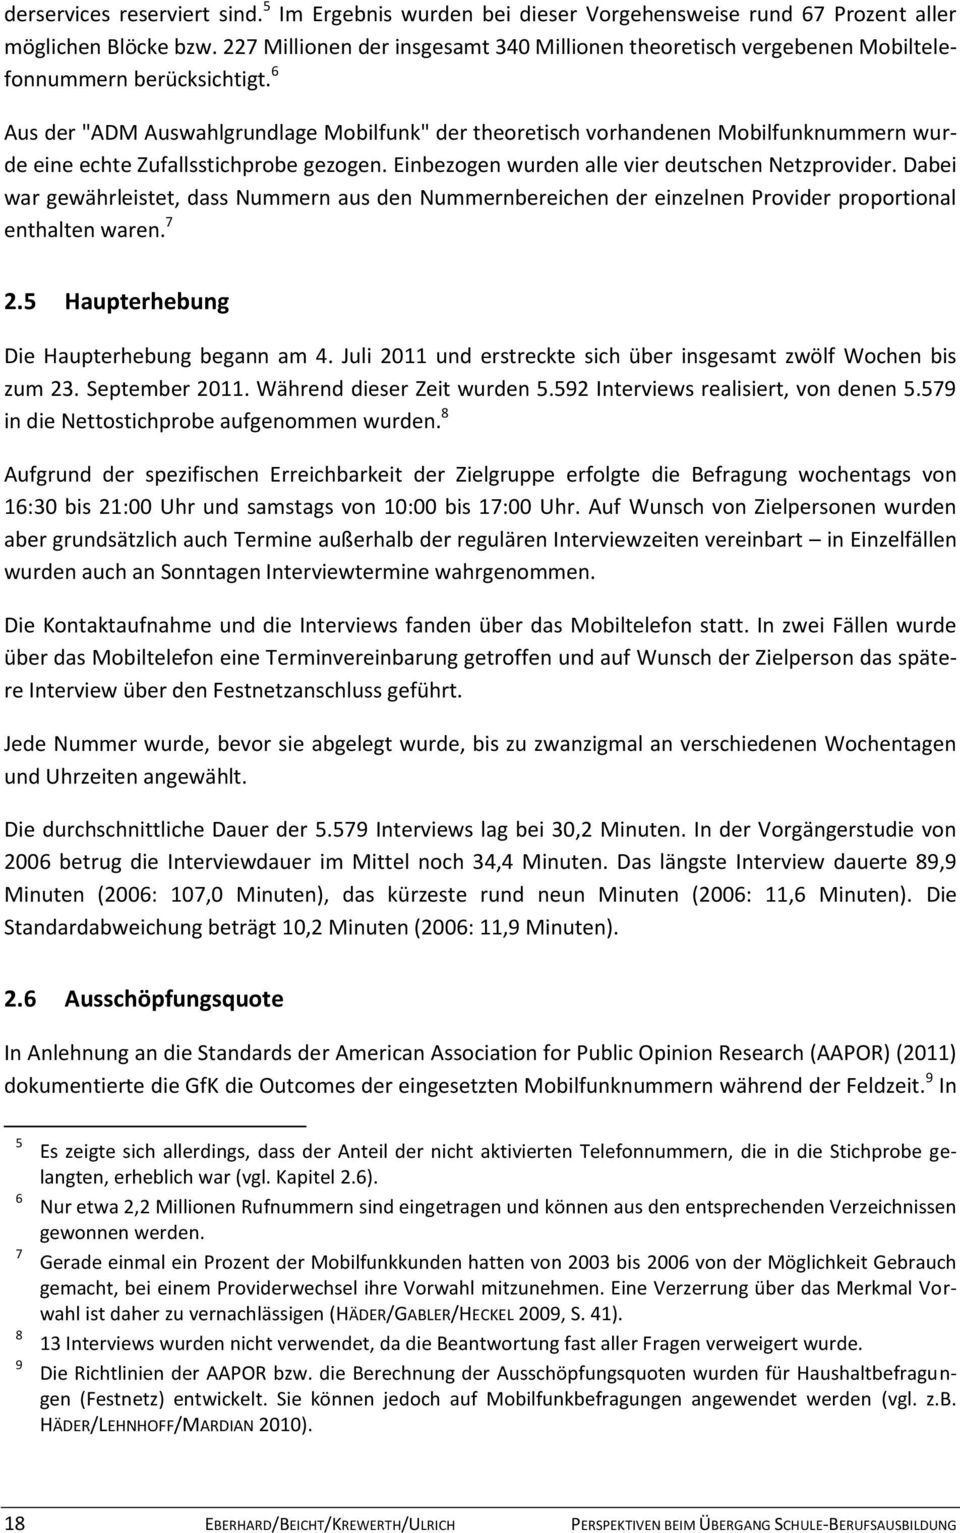 6 Aus der "ADM Auswahlgrundlage Mobilfunk" der theoretisch vorhandenen Mobilfunknummern wurde eine echte Zufallsstichprobe gezogen. Einbezogen wurden alle vier deutschen Netzprovider.